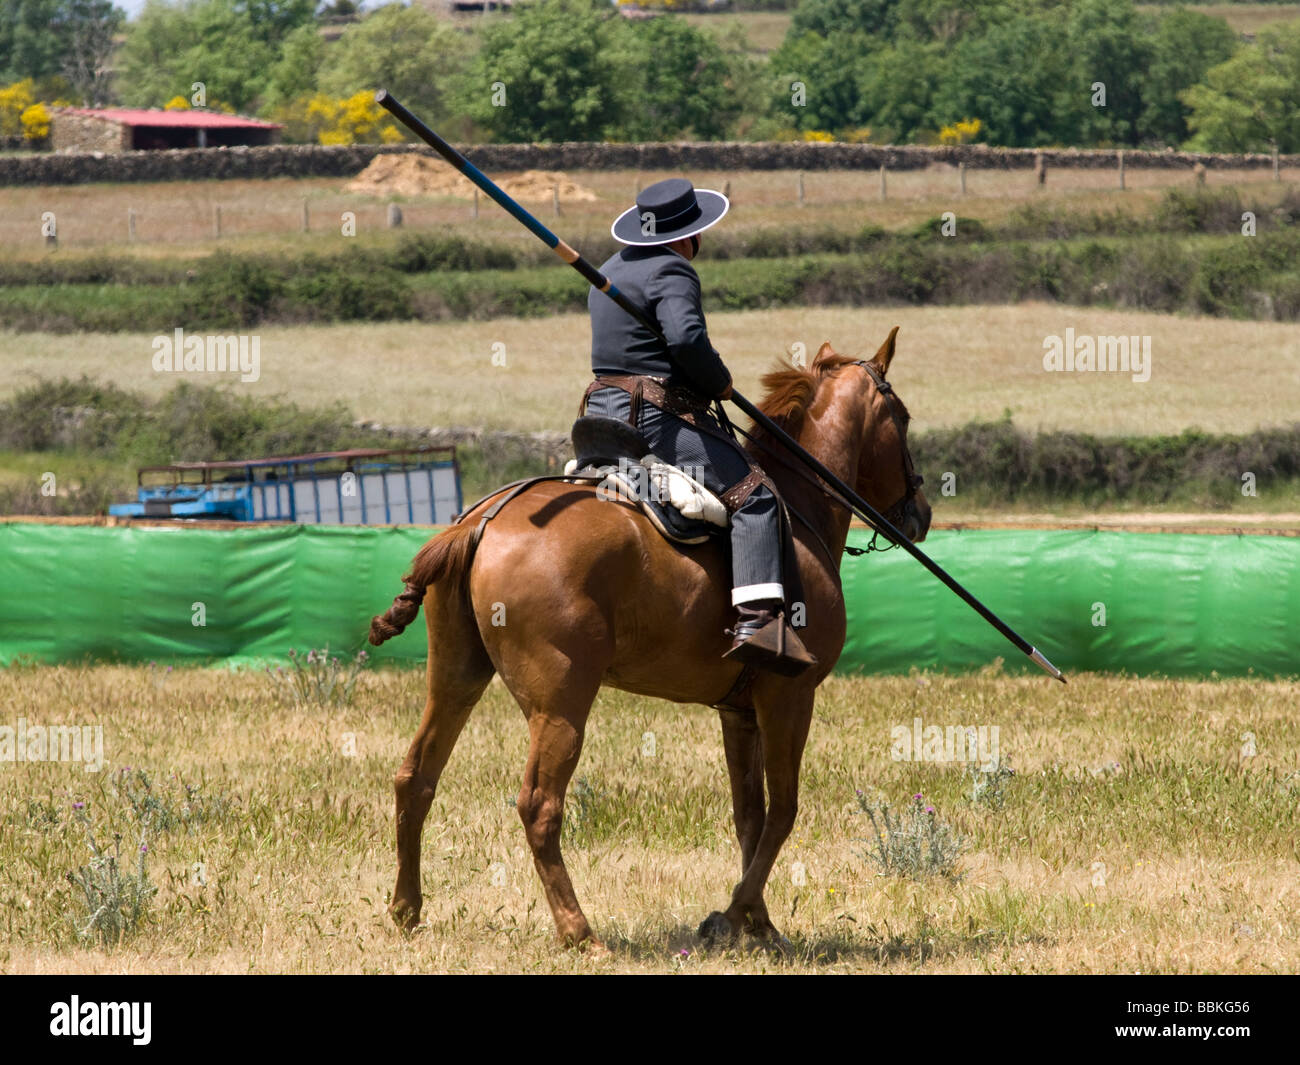 A rider at an 'Acoso y Derribo' contest in Castilla y Leon, Spain Stock Photo